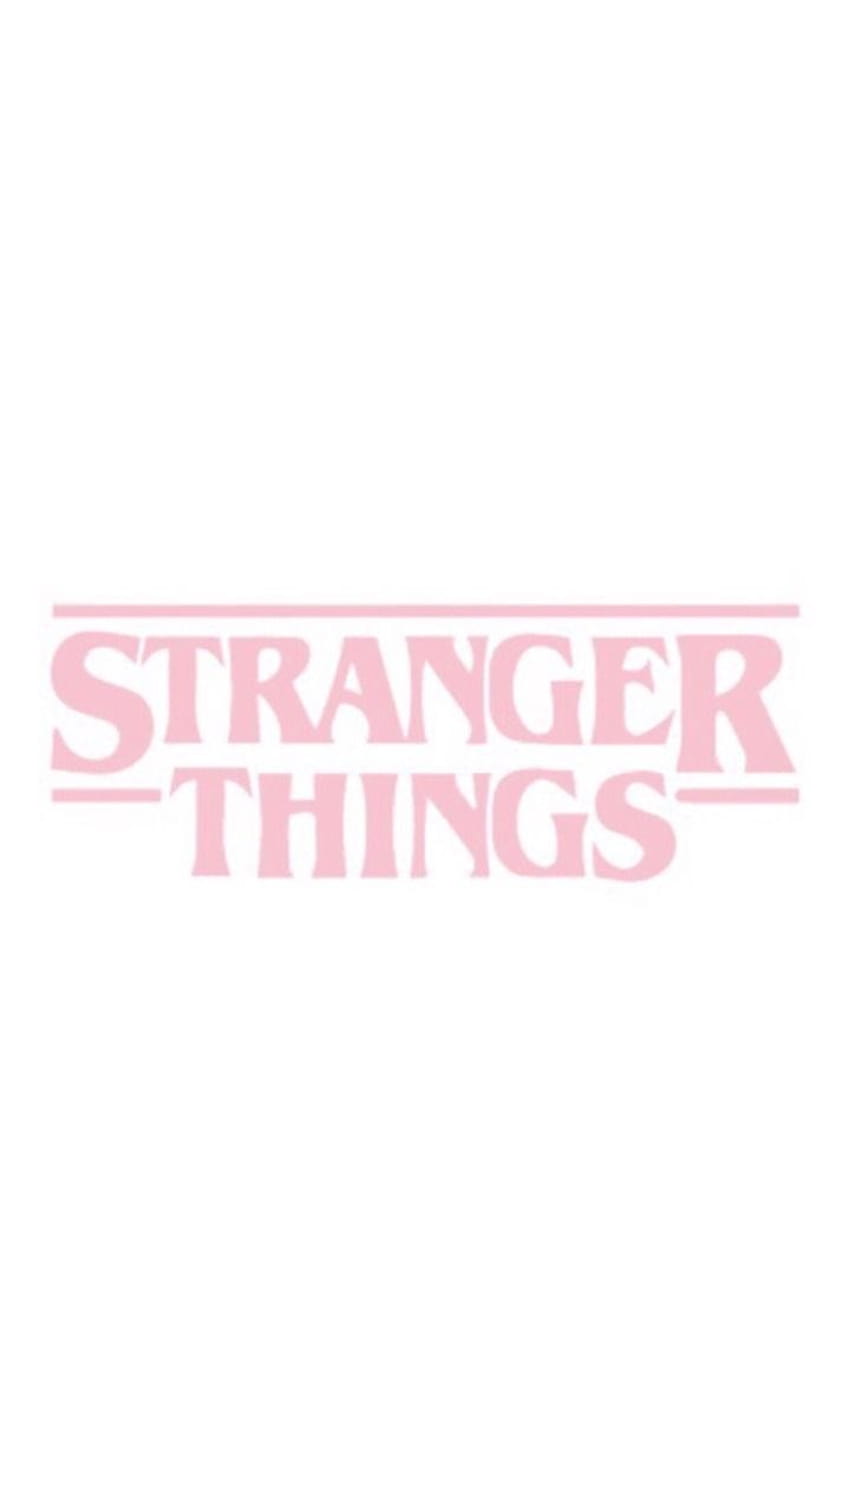 888 mẫu Stranger things background aesthetic Chất lượng cao, tải ngay